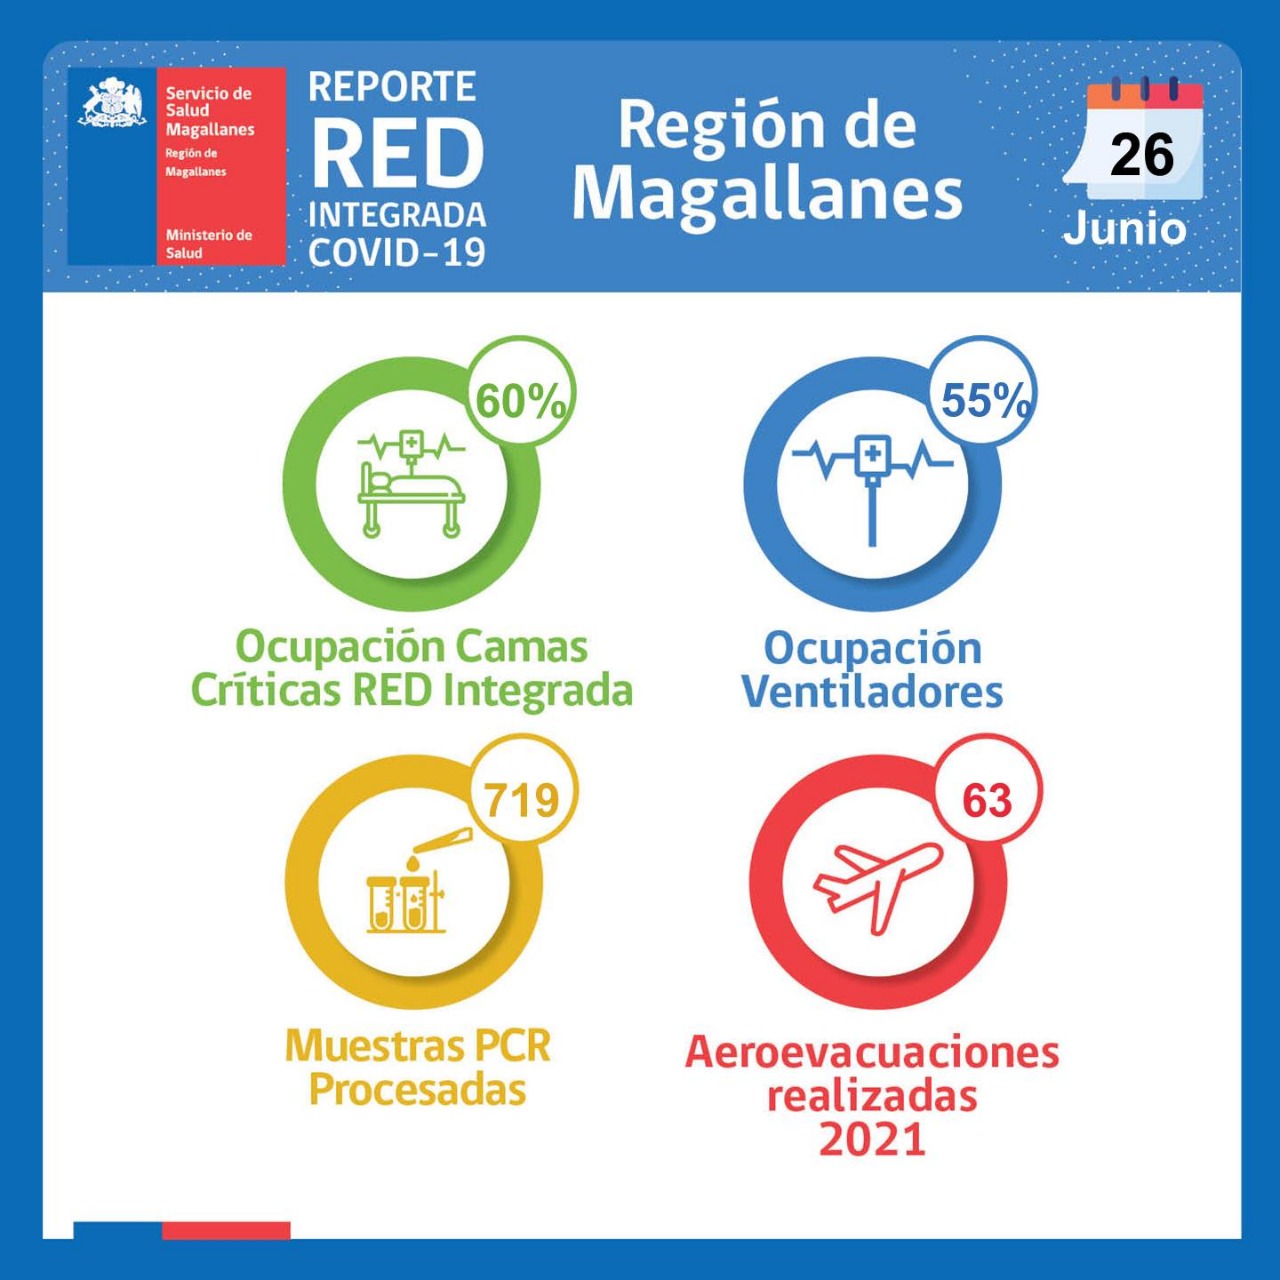 Estado de la red integrada de covid19 en Magallanes, al sábado 26 de junio